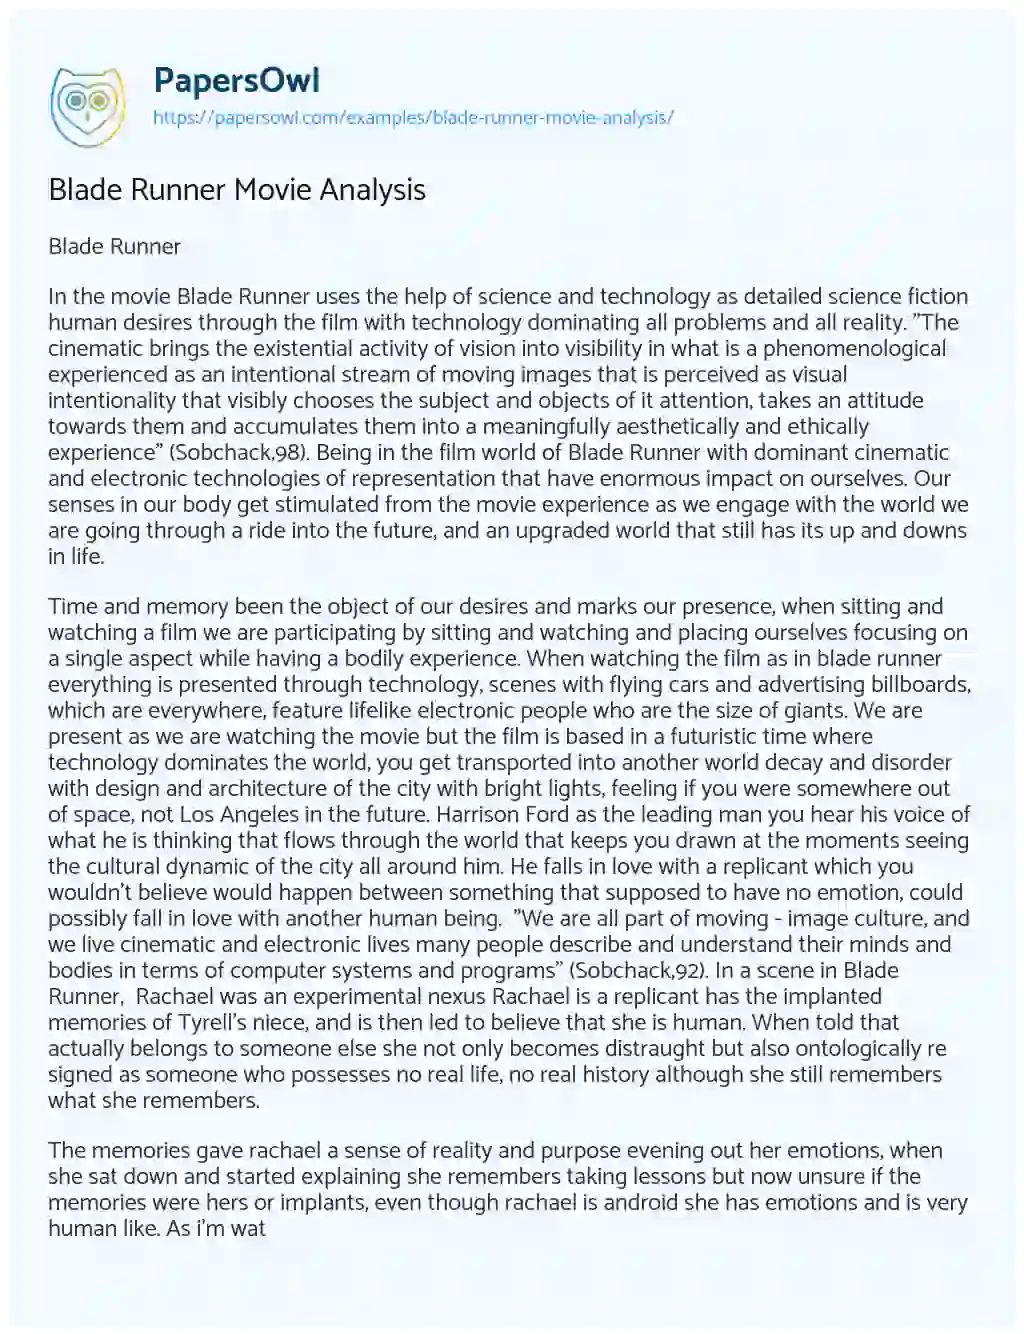 Essay on Blade Runner Movie Analysis